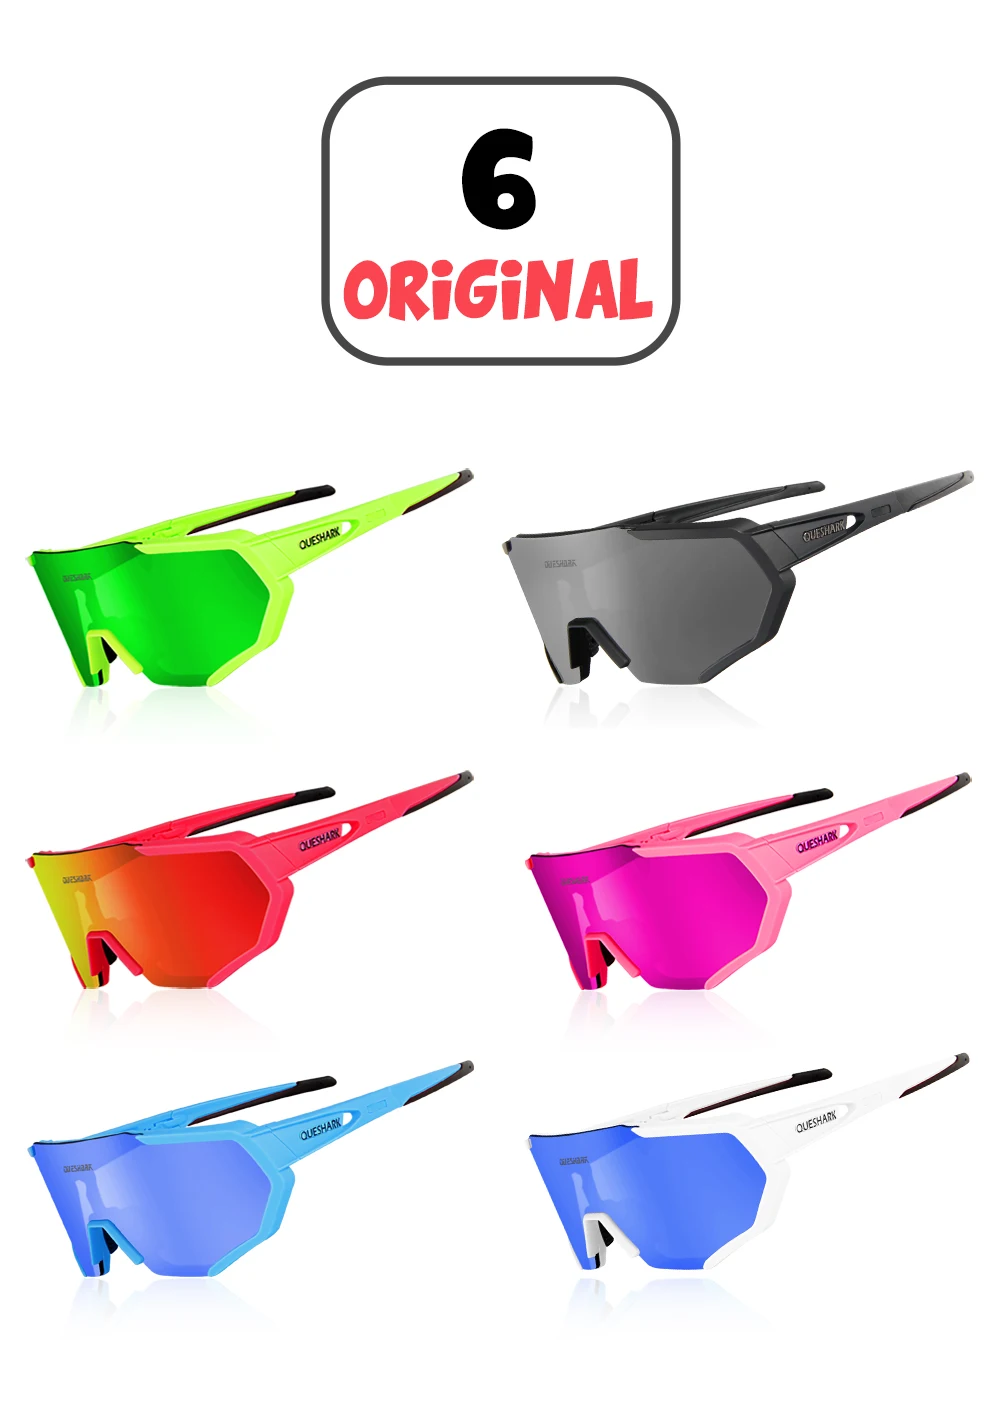 Queshark Профессиональный 4 Объектив/комплект TR90 кадр HD зеркальные поляризованные велосипедные очки большой Размеры очки, спортивные очки